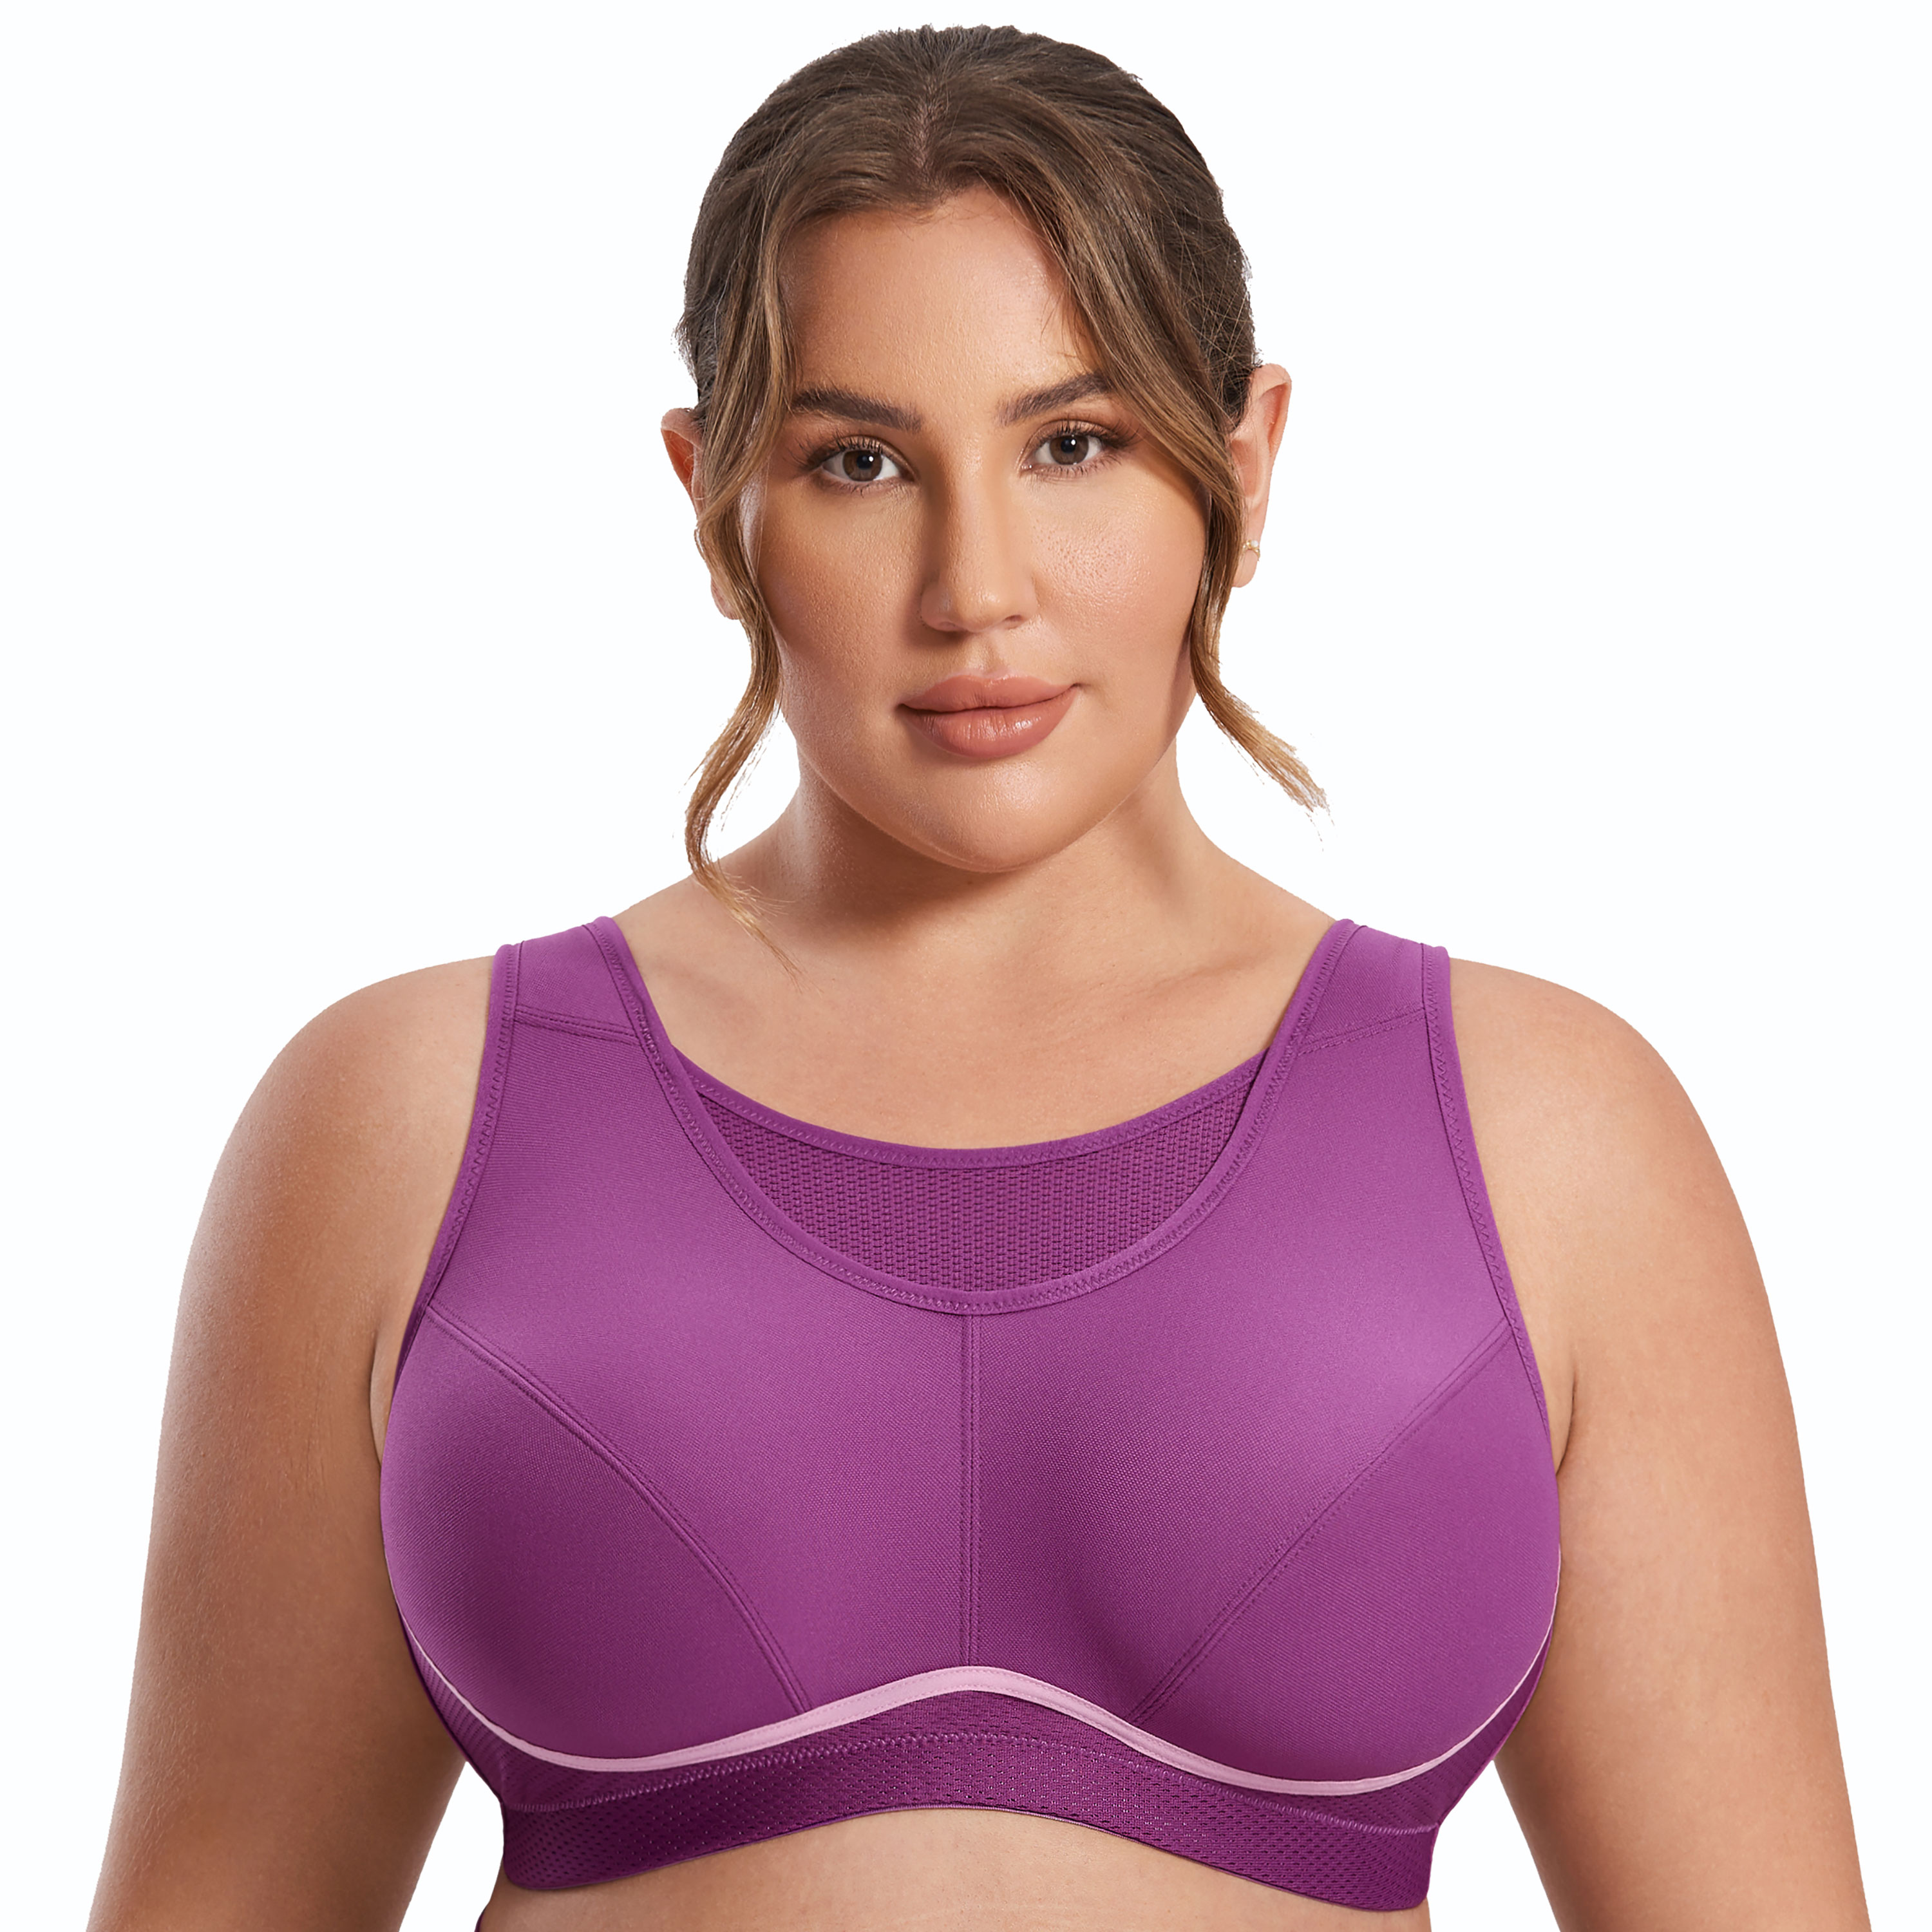 28 Size Bra - Bras - Aliexpress - Shop 28 size bra with free return